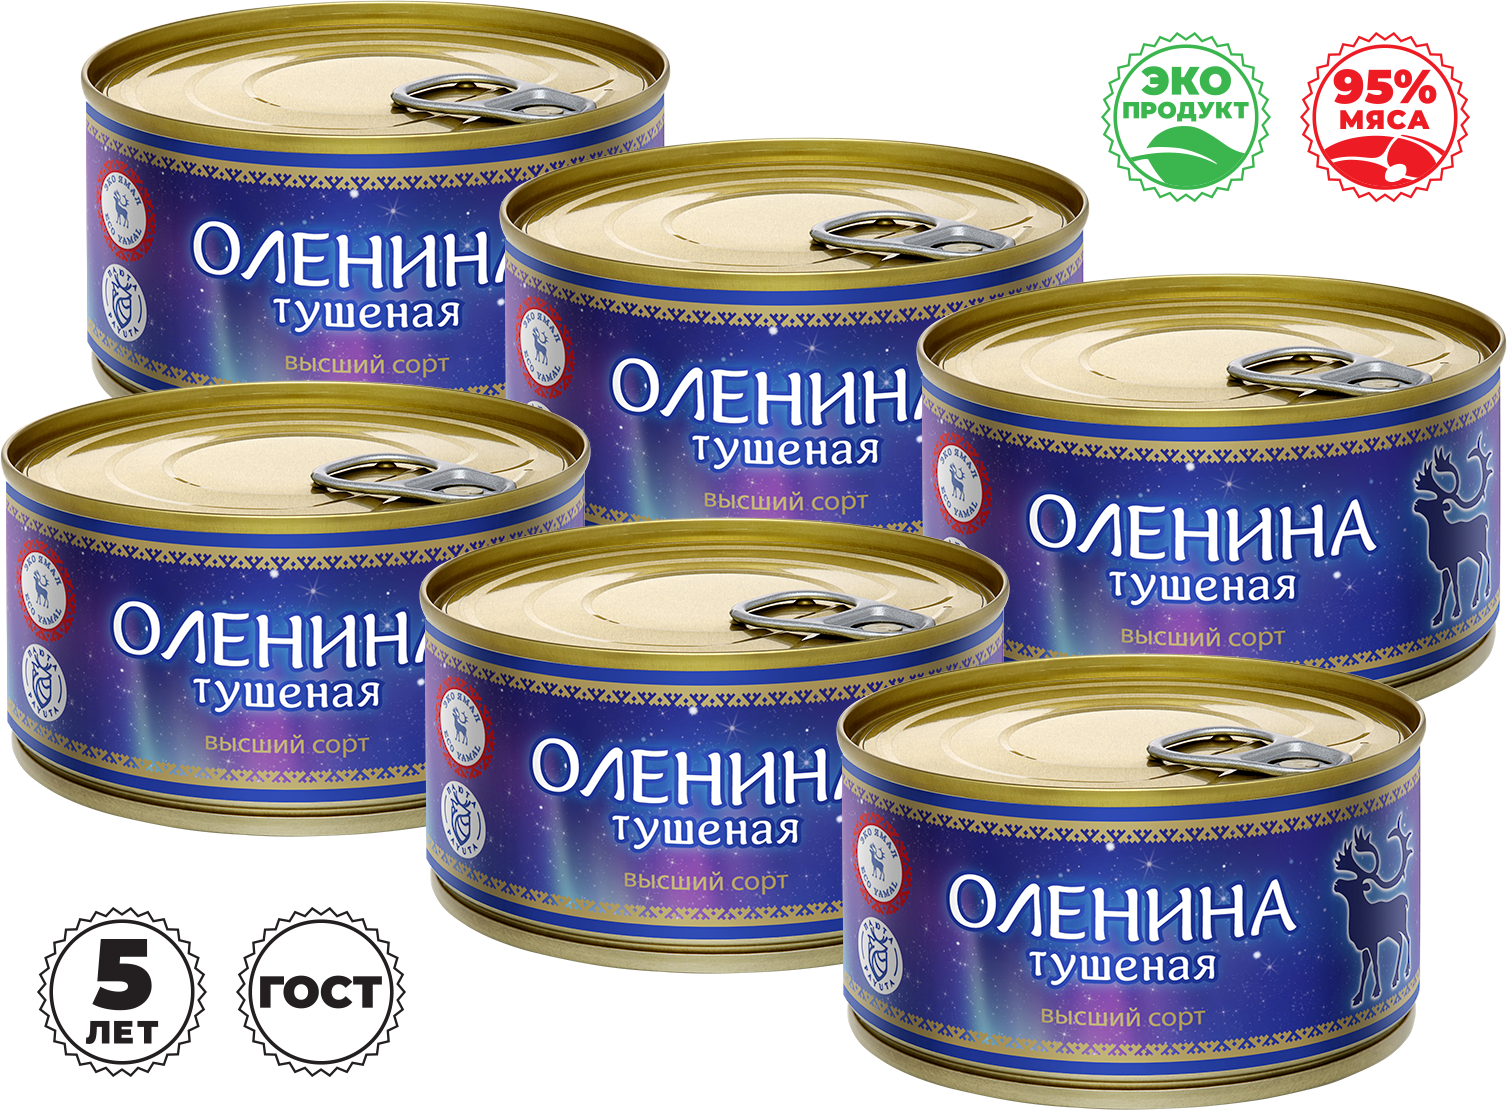 Мясные консервы Оленина тушеная, ГОСТ 32125-2013, Высший сорт, 6 штук по 325 гр.